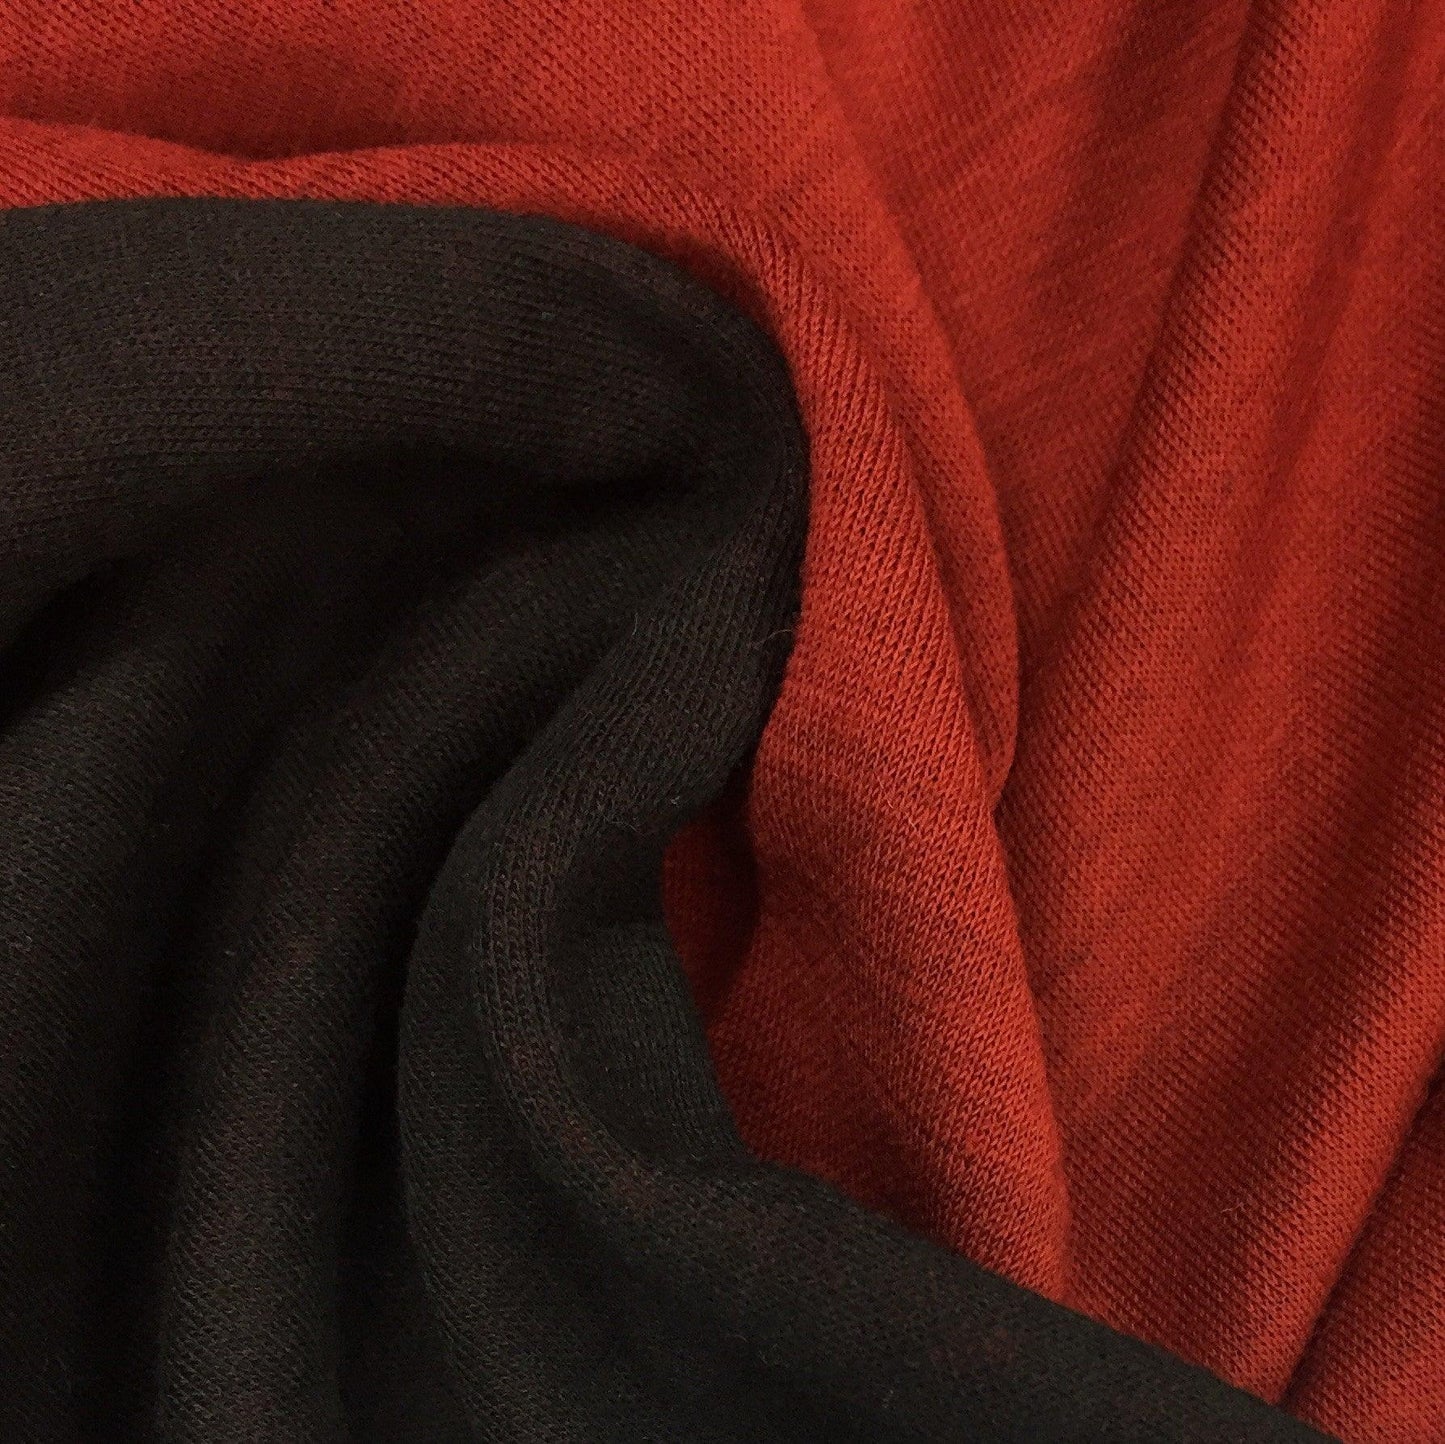 Nova on Black Double-Sided Merino Wool Jersey